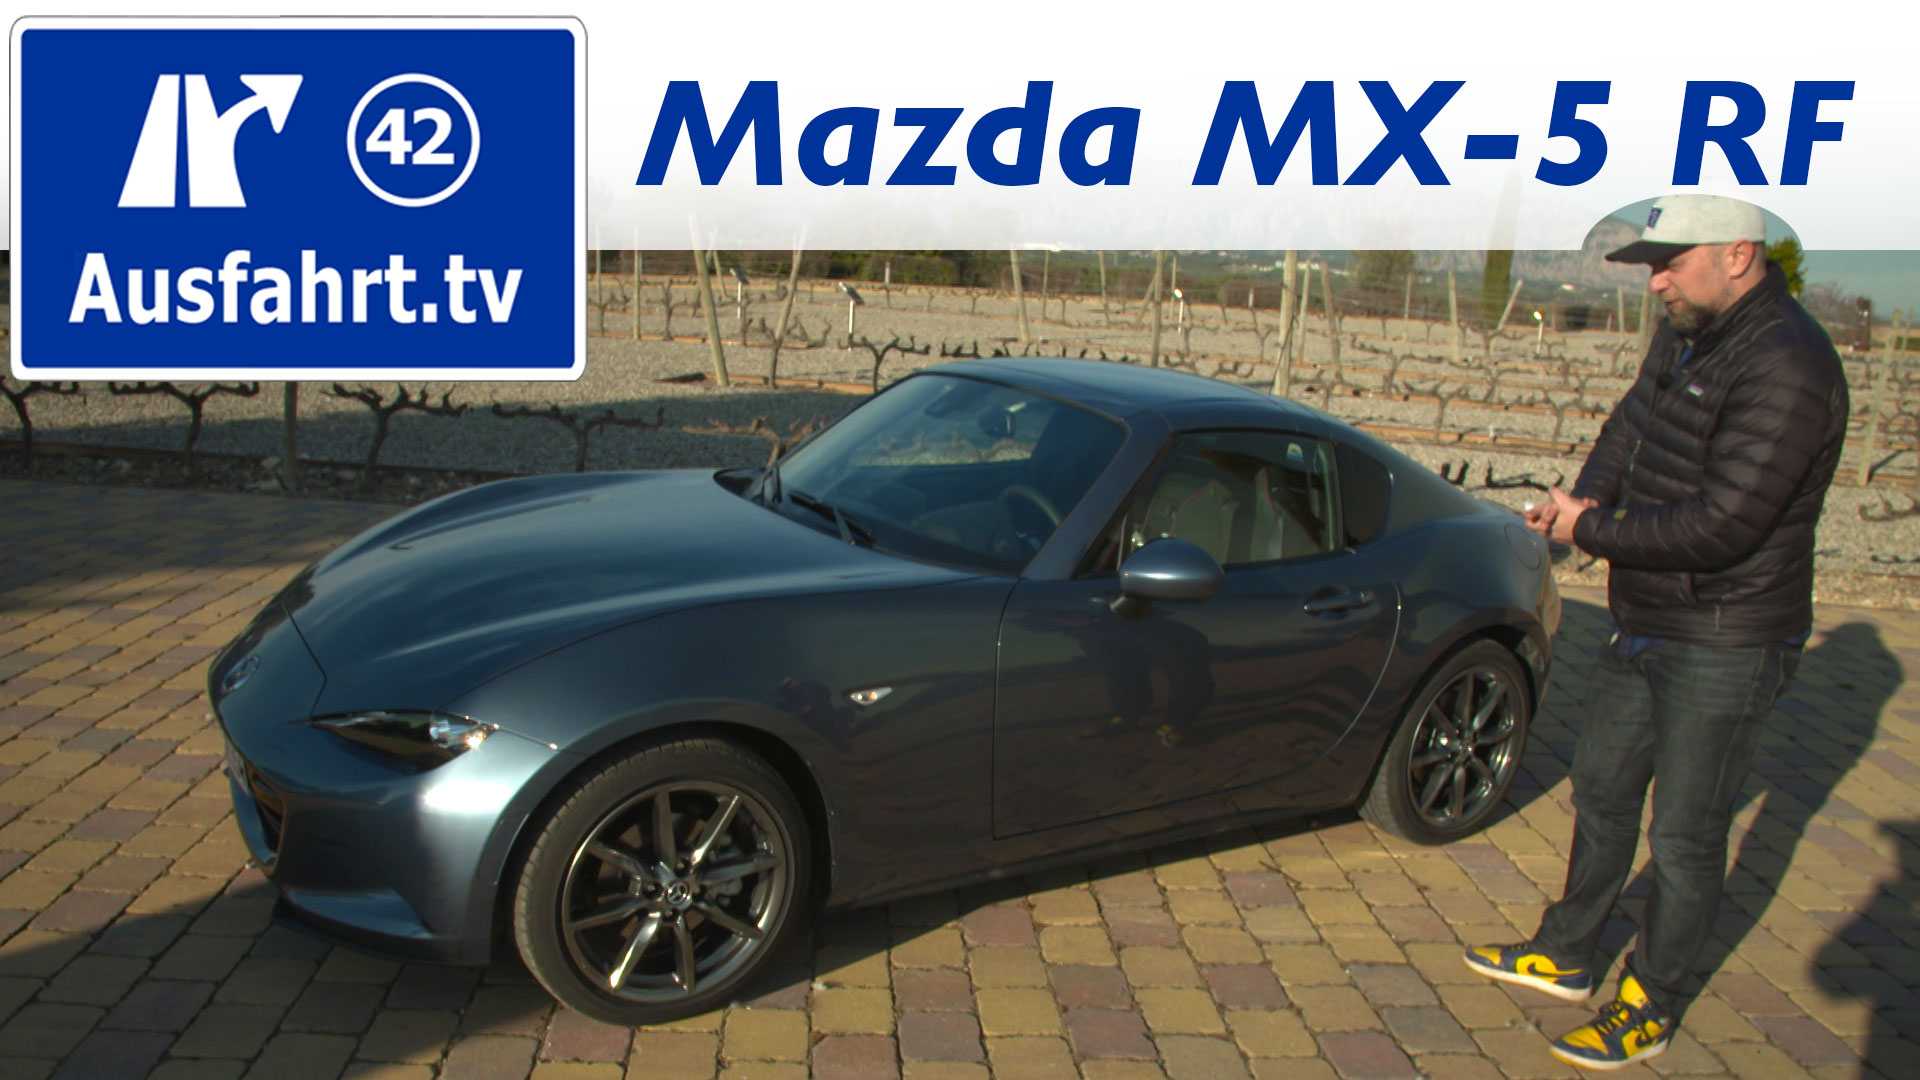 https://ausfahrt.tv/wp-content/uploads/2017/01/2017-Mazda-MX-5-RF-Fahrbericht-der-Probefahrt-Test-Review.jpg